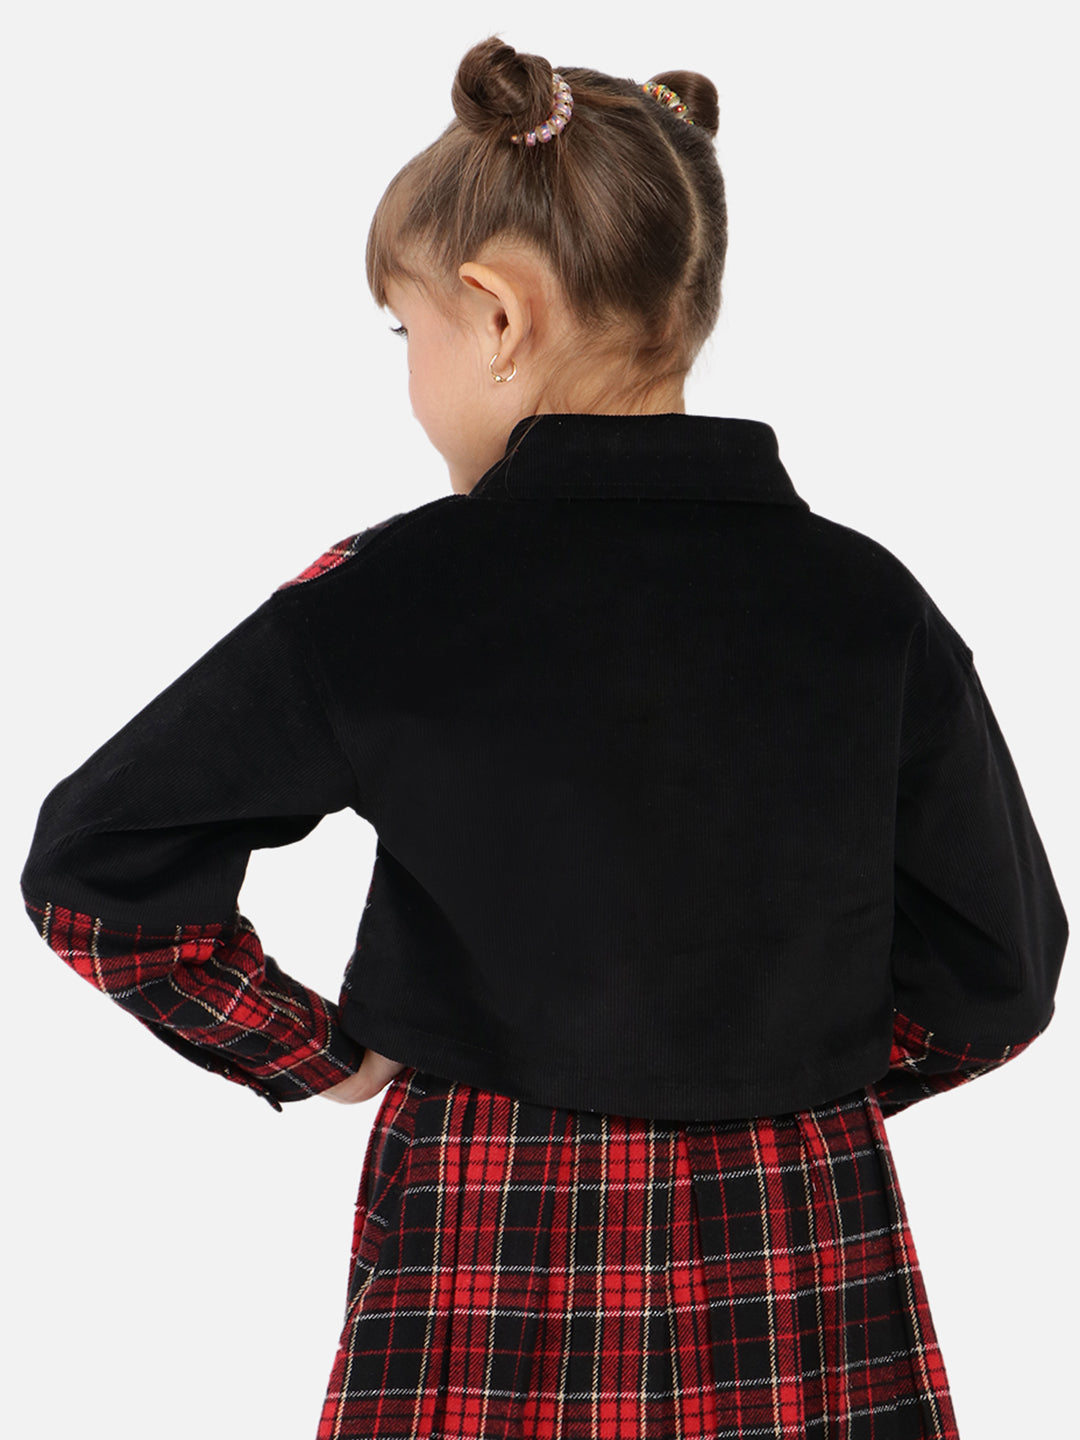 Nautinati Girls Jacket